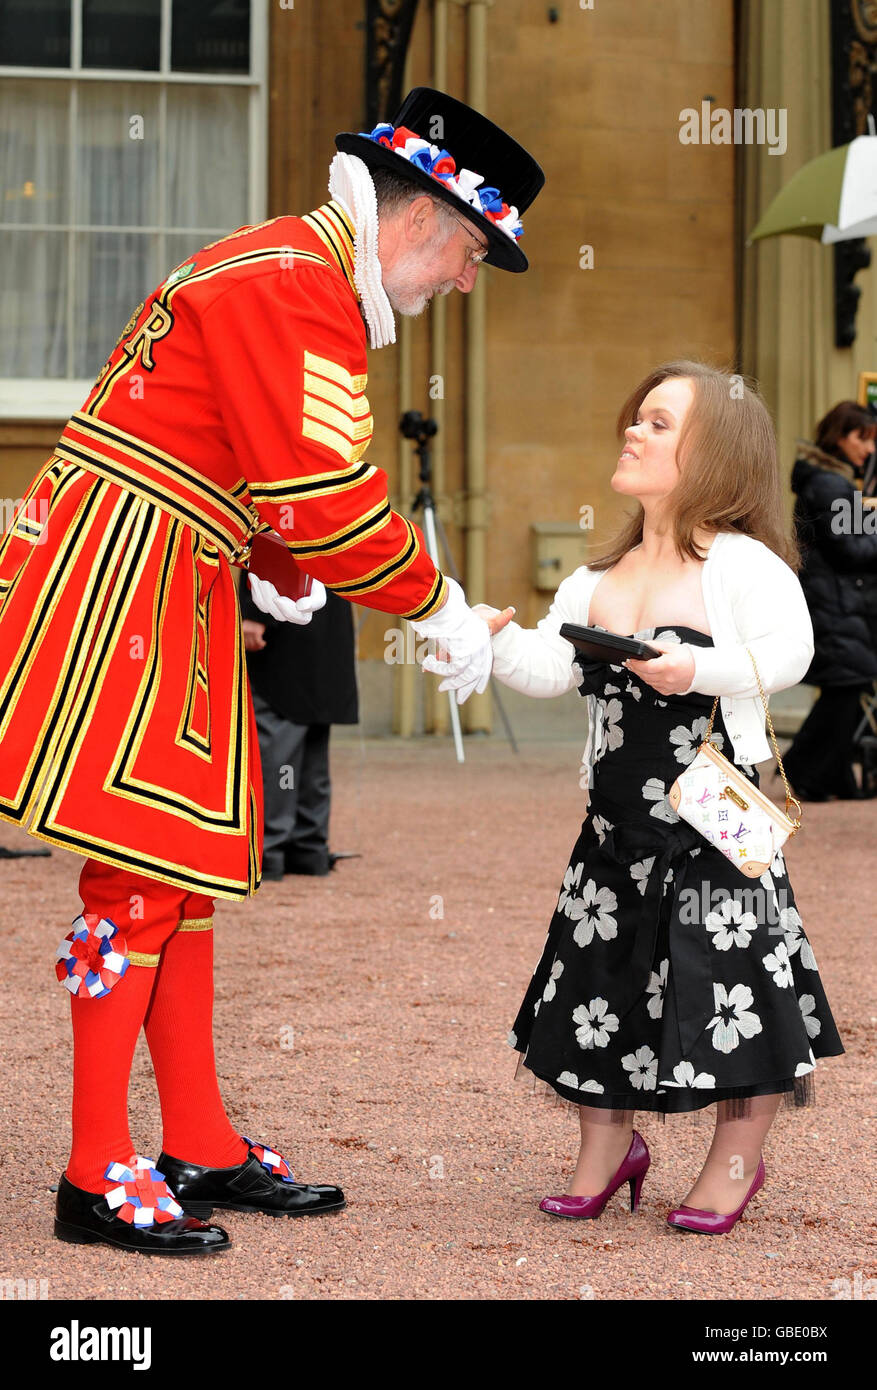 Yeoman il sergente Roderick Truelove, che ha ricevuto una Medaglia reale Vittoriana, si congratula con il nuotatore paralimpico Eleanor Simmonds dopo aver ricevuto la sua MBE dalla Regina Elisabetta II della Gran Bretagna a Buckingham Palace, Londra. Foto Stock